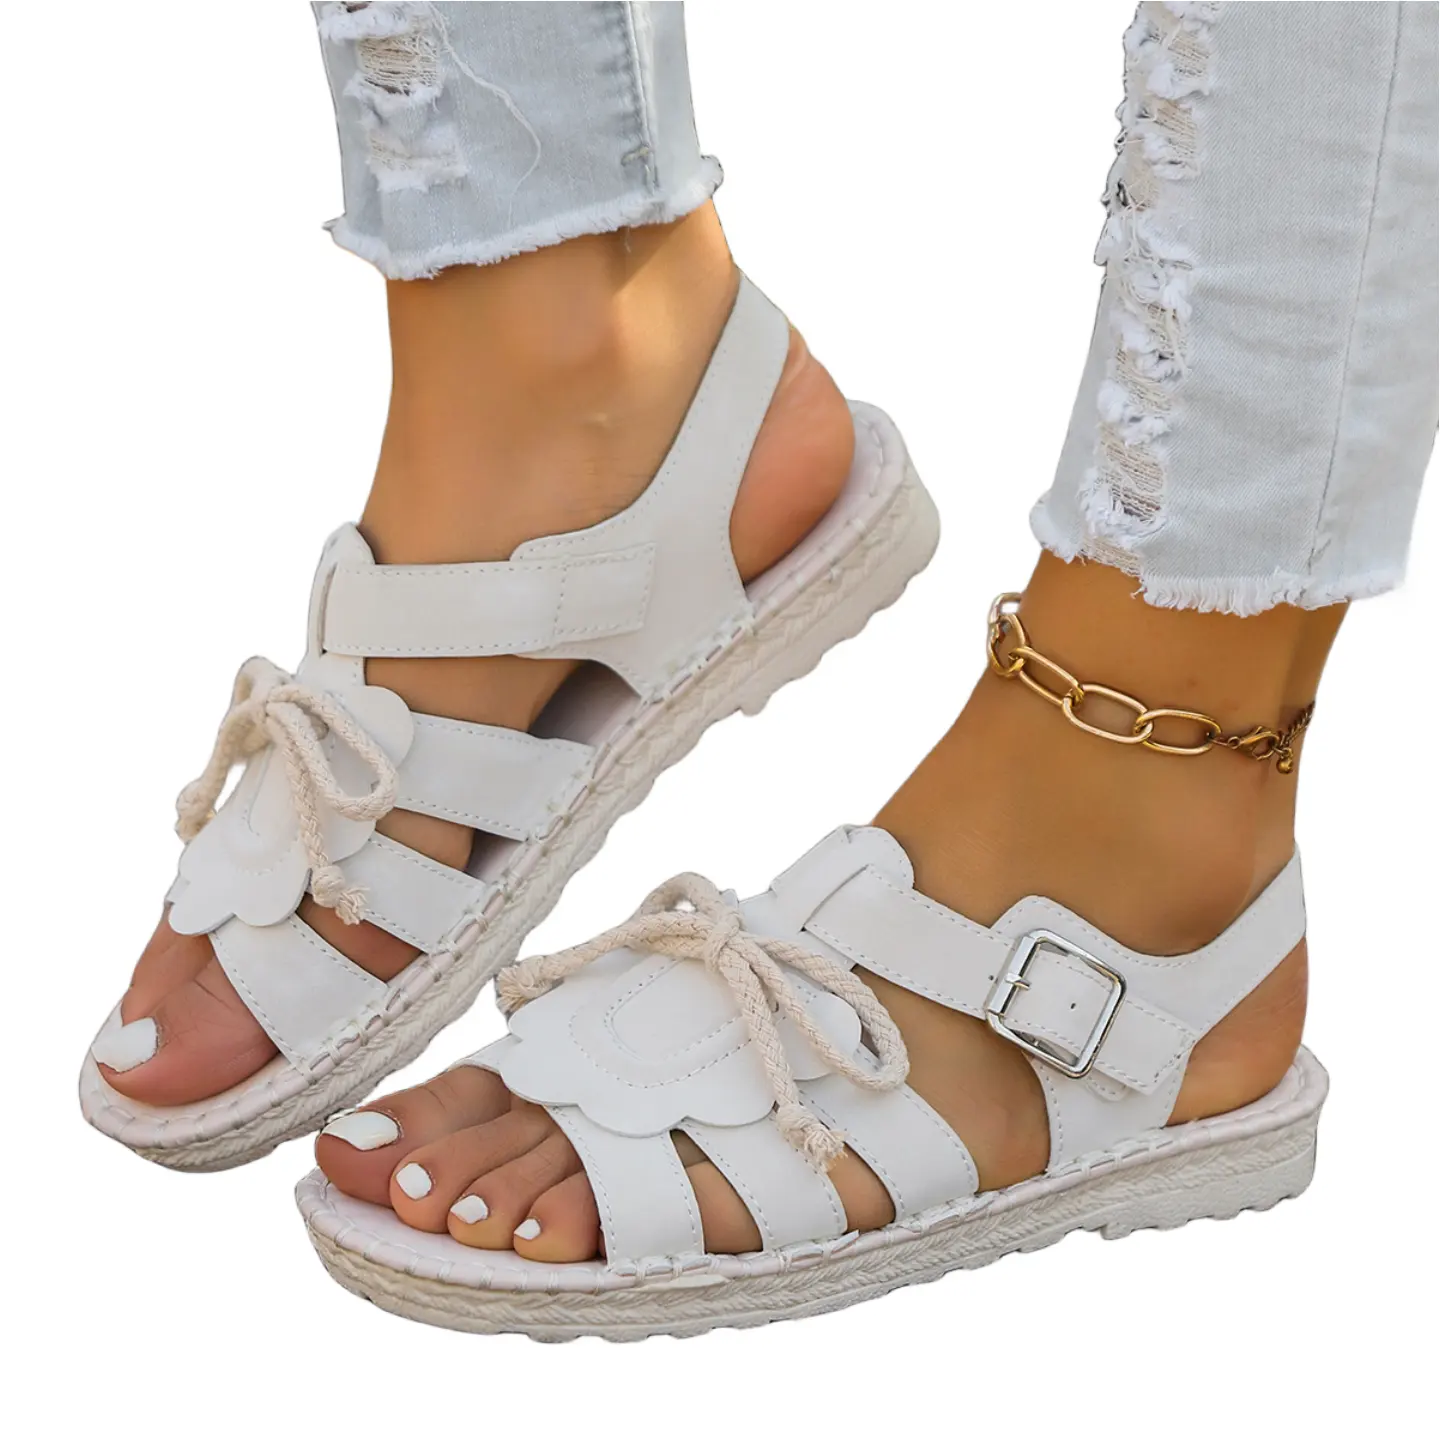 Prezzo di fabbrica all'ingrosso lino suola facile da camminare donna sandali scarpe con elastico YTXNT52